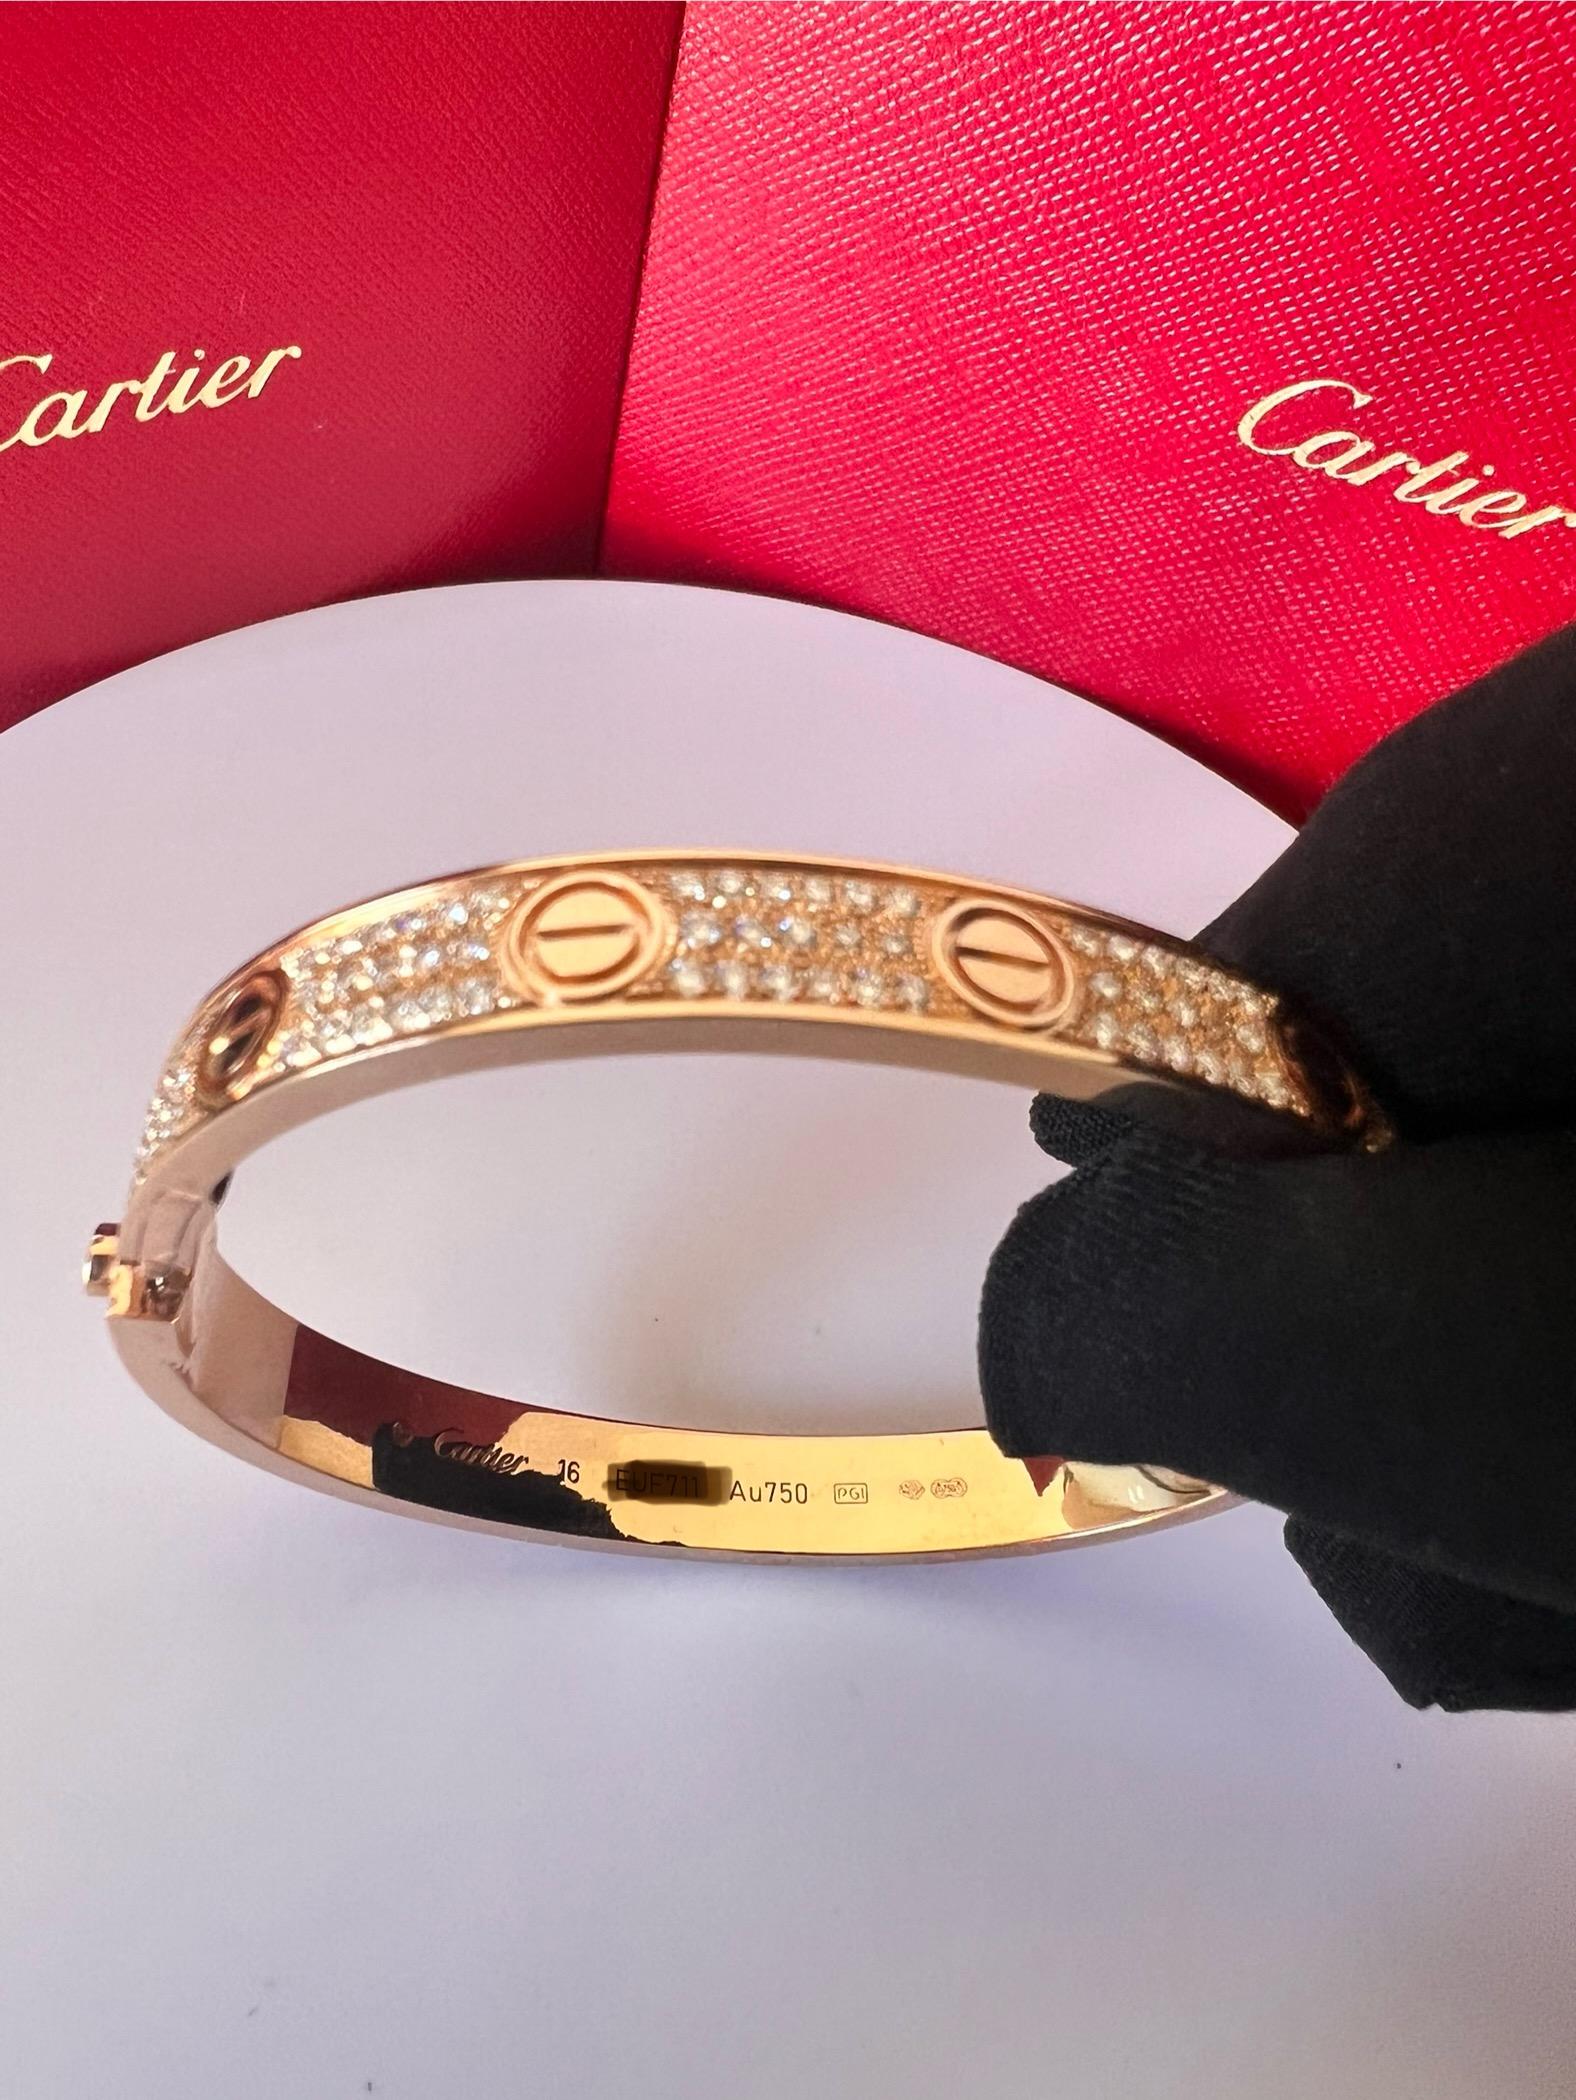 CARTIER LIEBE ARMBAND
Cartier 'Love' Armreif aus 18 Karat Gelbgold mit goldenen Schraubverschlüssen und runden Diamanten im Brillantschliff (Farbe D-F, Reinheit VVS) in Pave-Fassung
Signiert Cartier,  750, mit Seriennummer und Punzen 
Das Armband